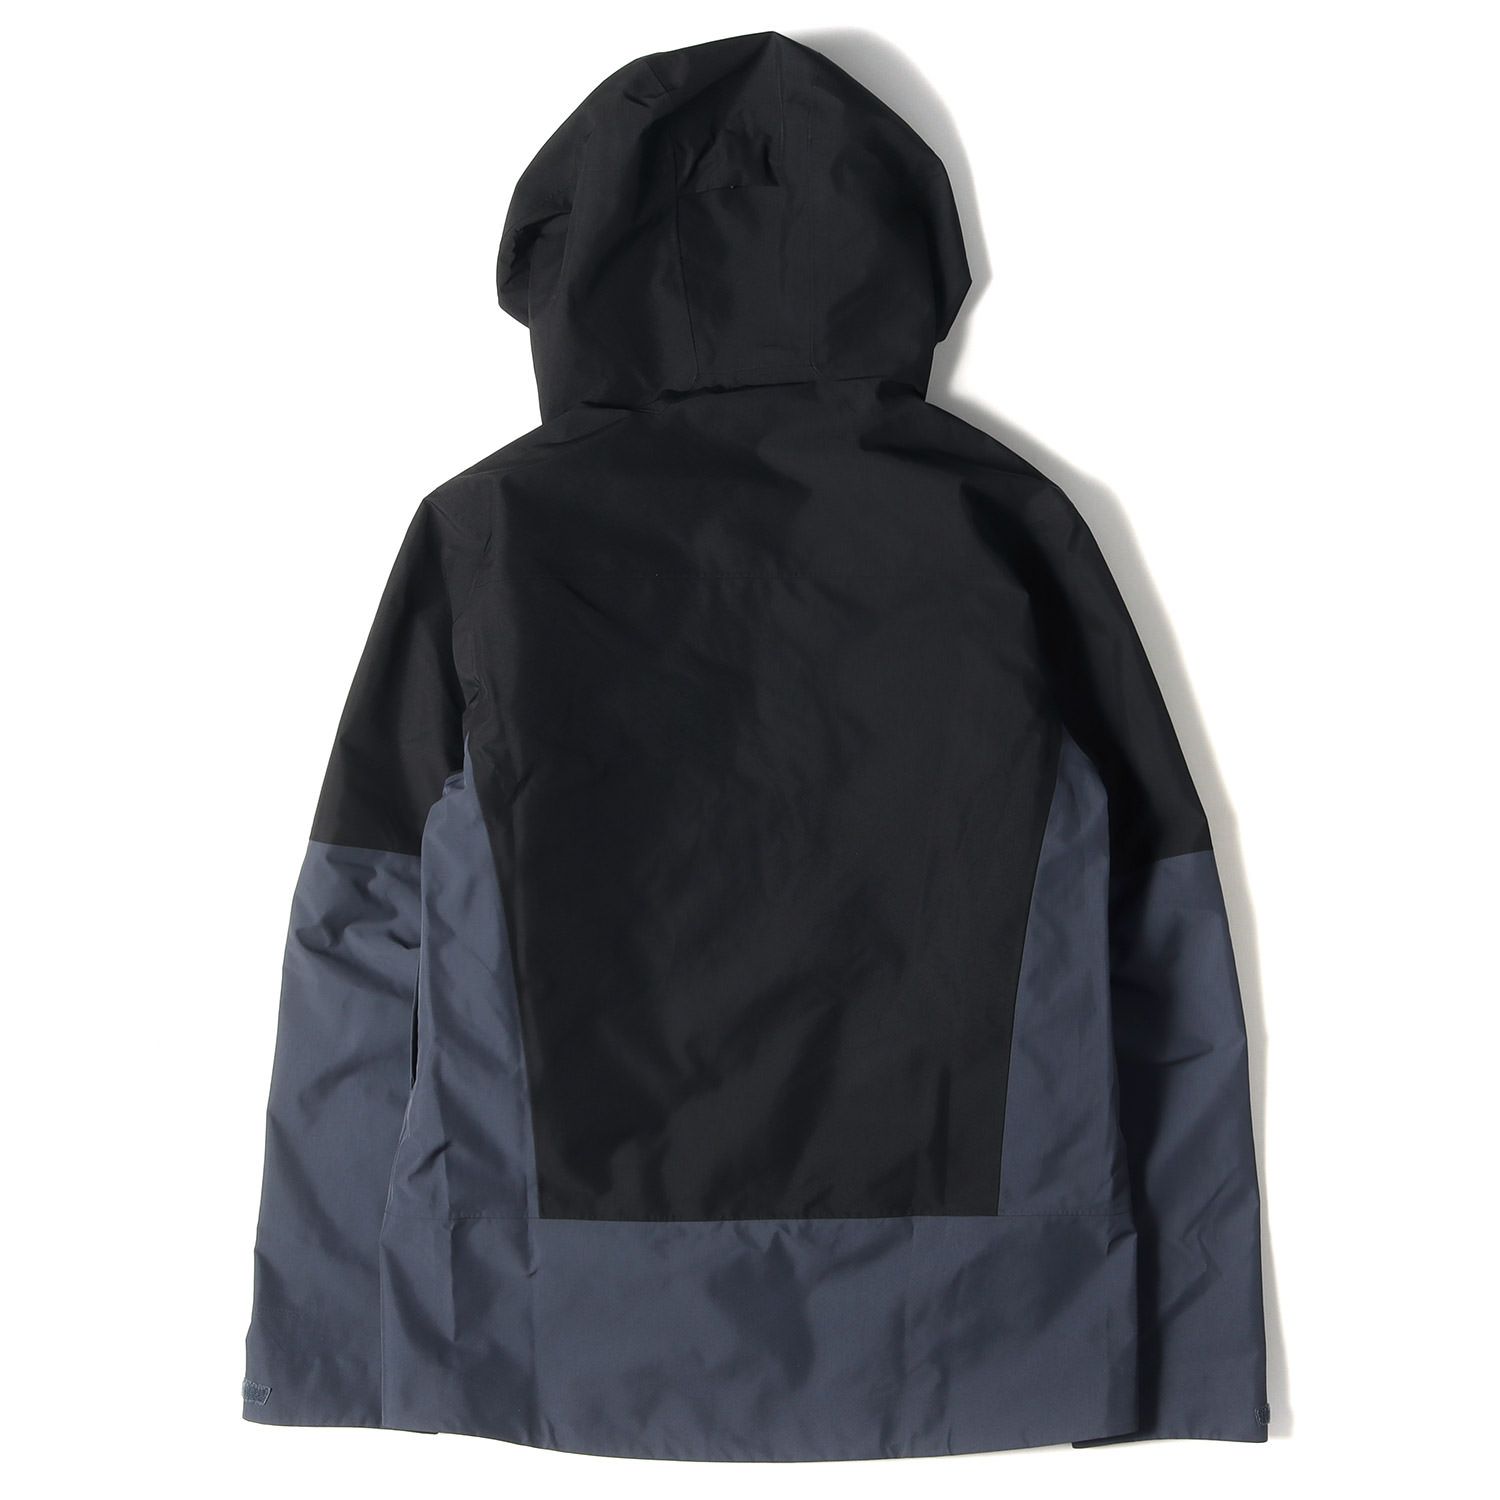 新品 Patagonia パタゴニア ジャケット GORE-TEX ゴアテックス ストーム シフトジャケット 22AW Storm Shift Jacket ブラック(BLK) 黒 M アウトドア ブランド-1